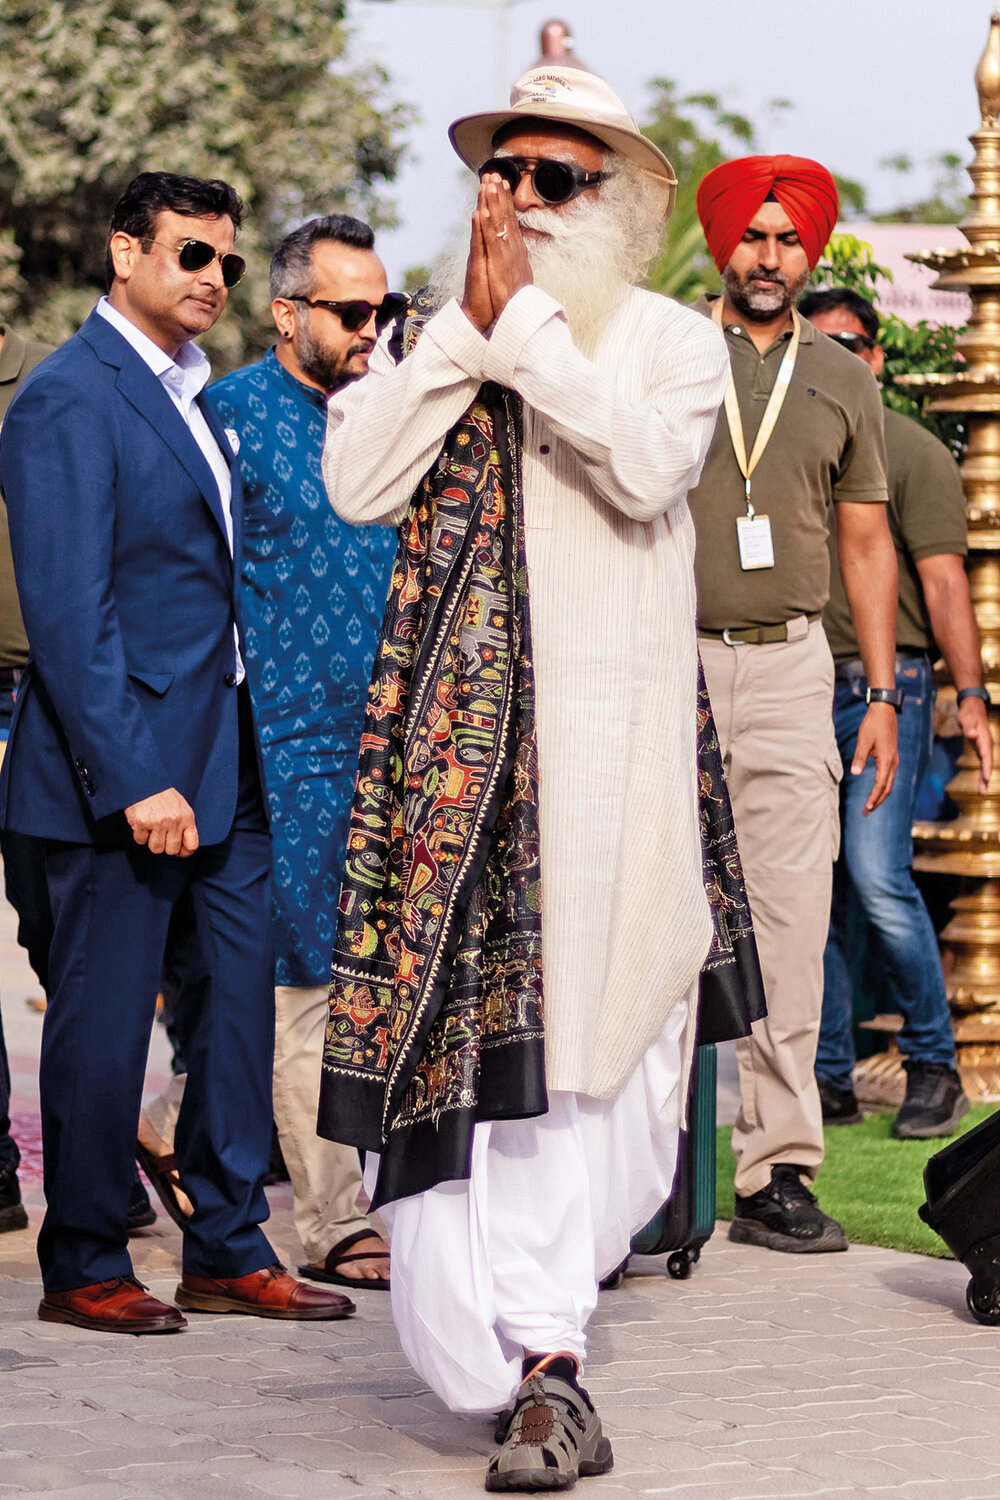 El gurú espiritual Jagadish Jaggi Vasudev, conocido por interpretar la obra de Darwin como una apropiación occidental de la antigua sabiduría india, llega al aeropuerto para la fiesta de Anant. AFP 